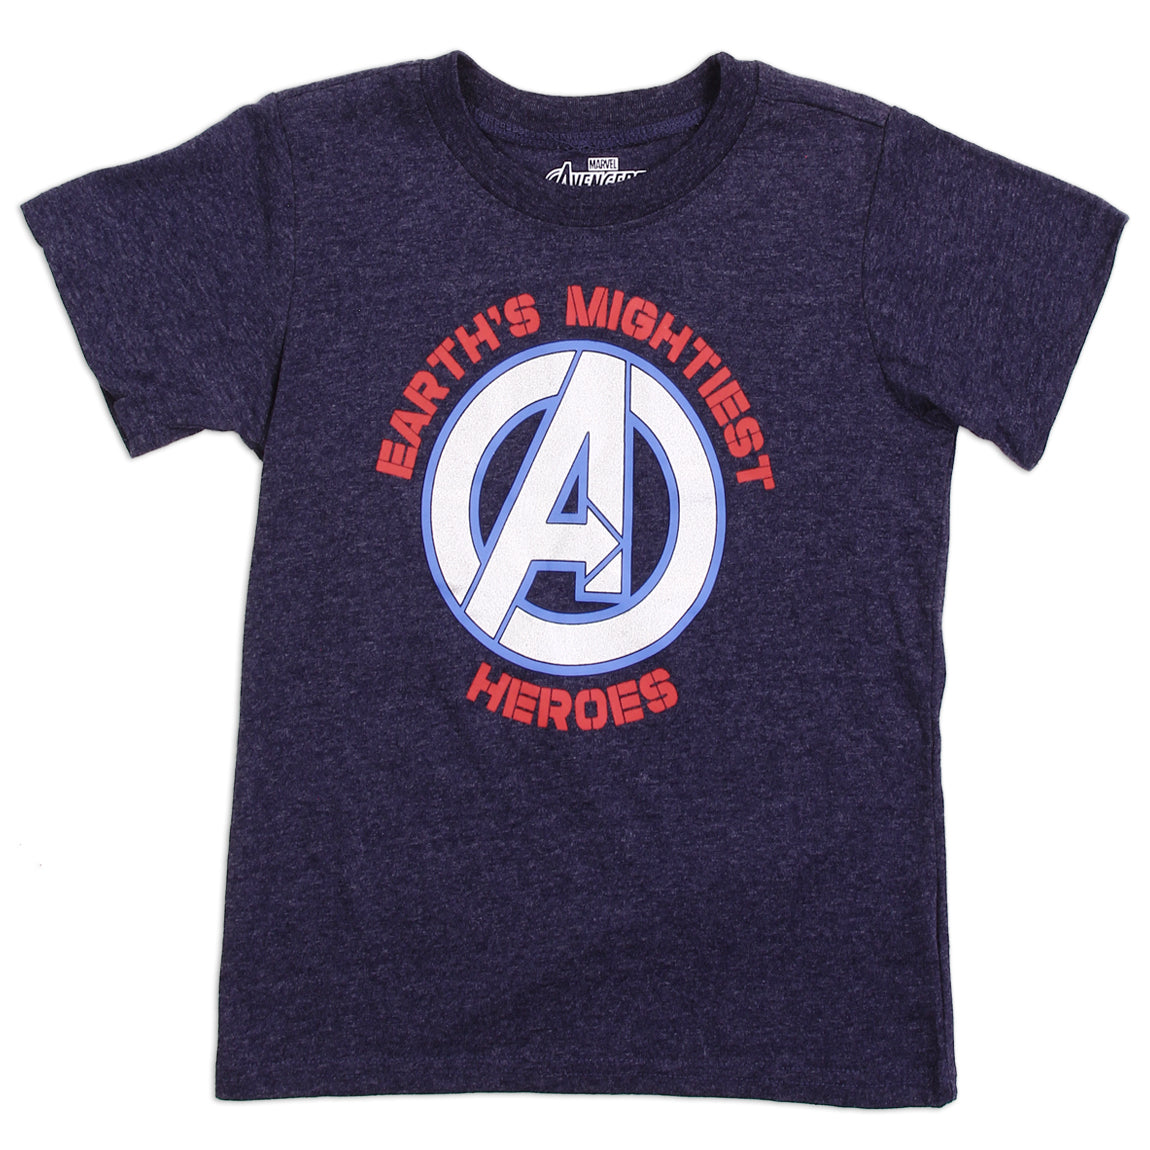 AVENGERS Boys 3-Pack T-Shirt Set (Pack of 6)